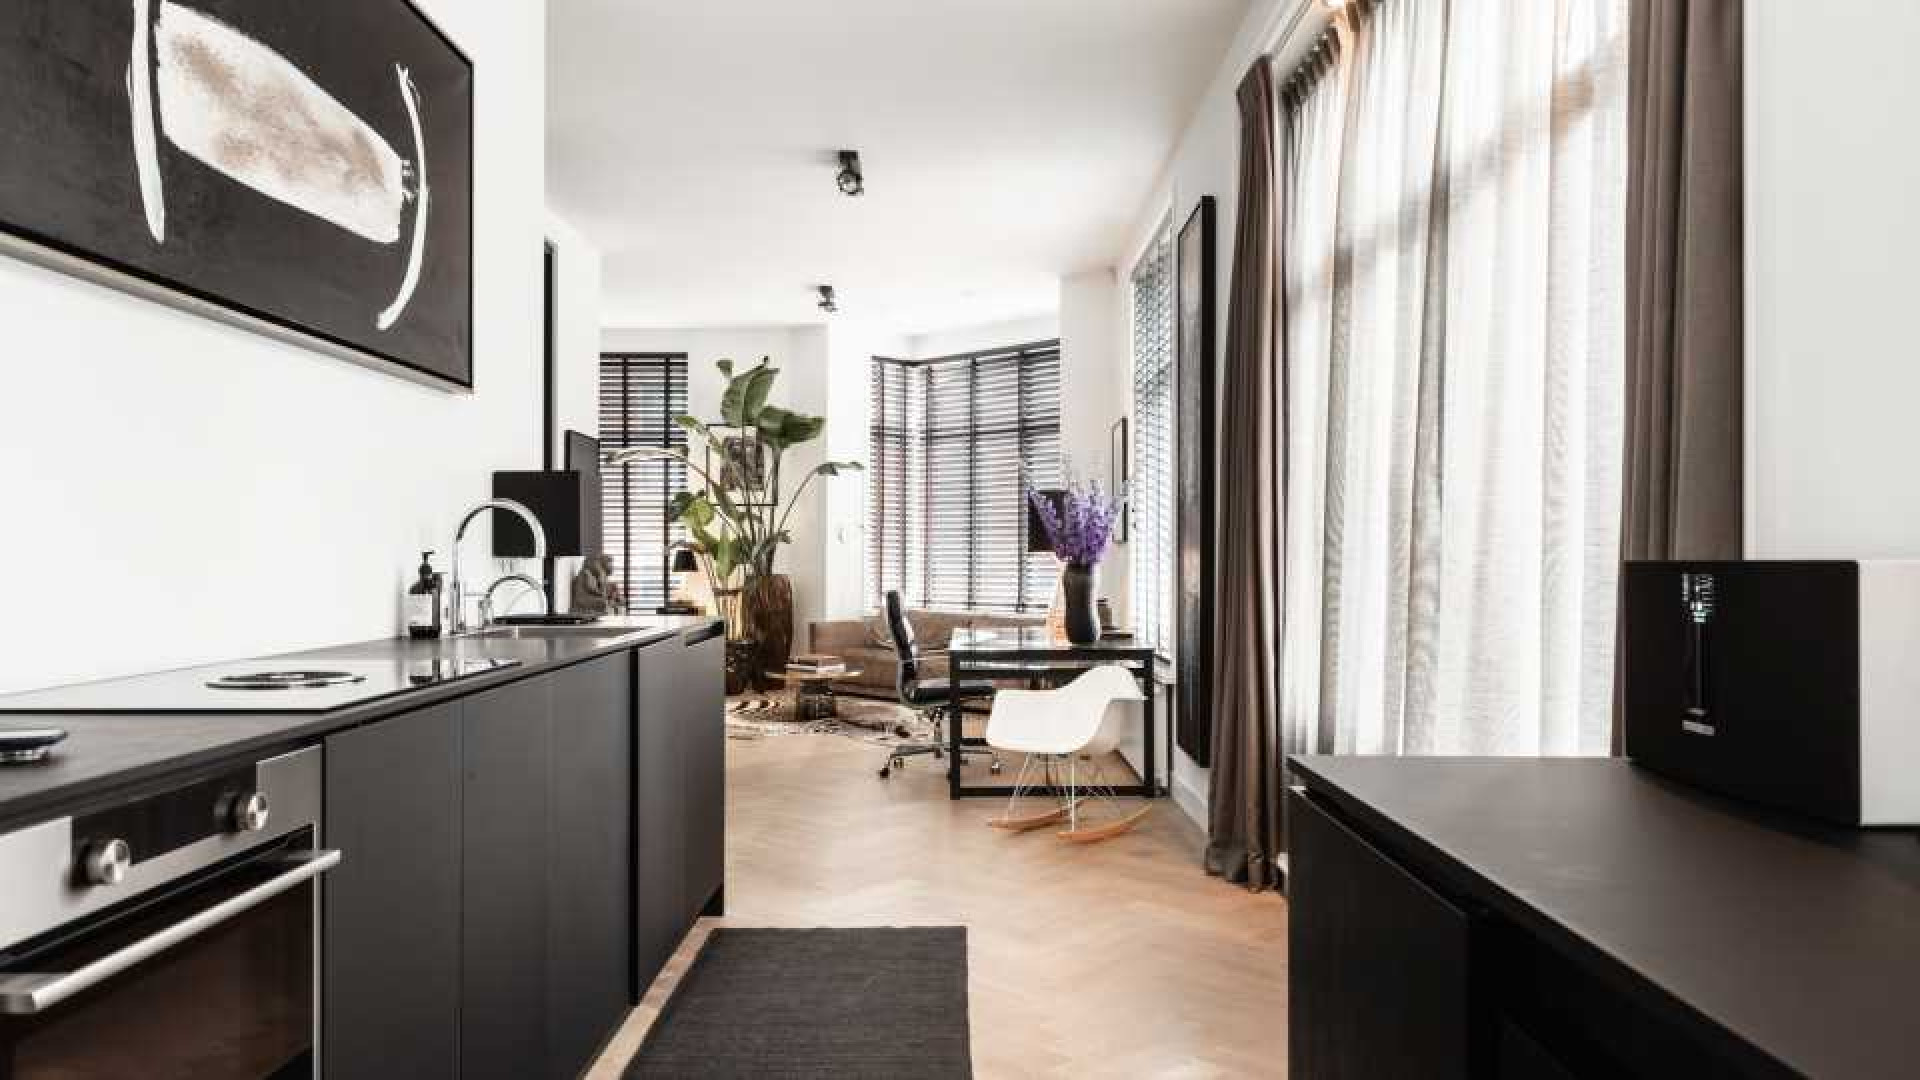 Leco van Zadelhoff zet zijn luxe dubbele bovenhuis te koop.